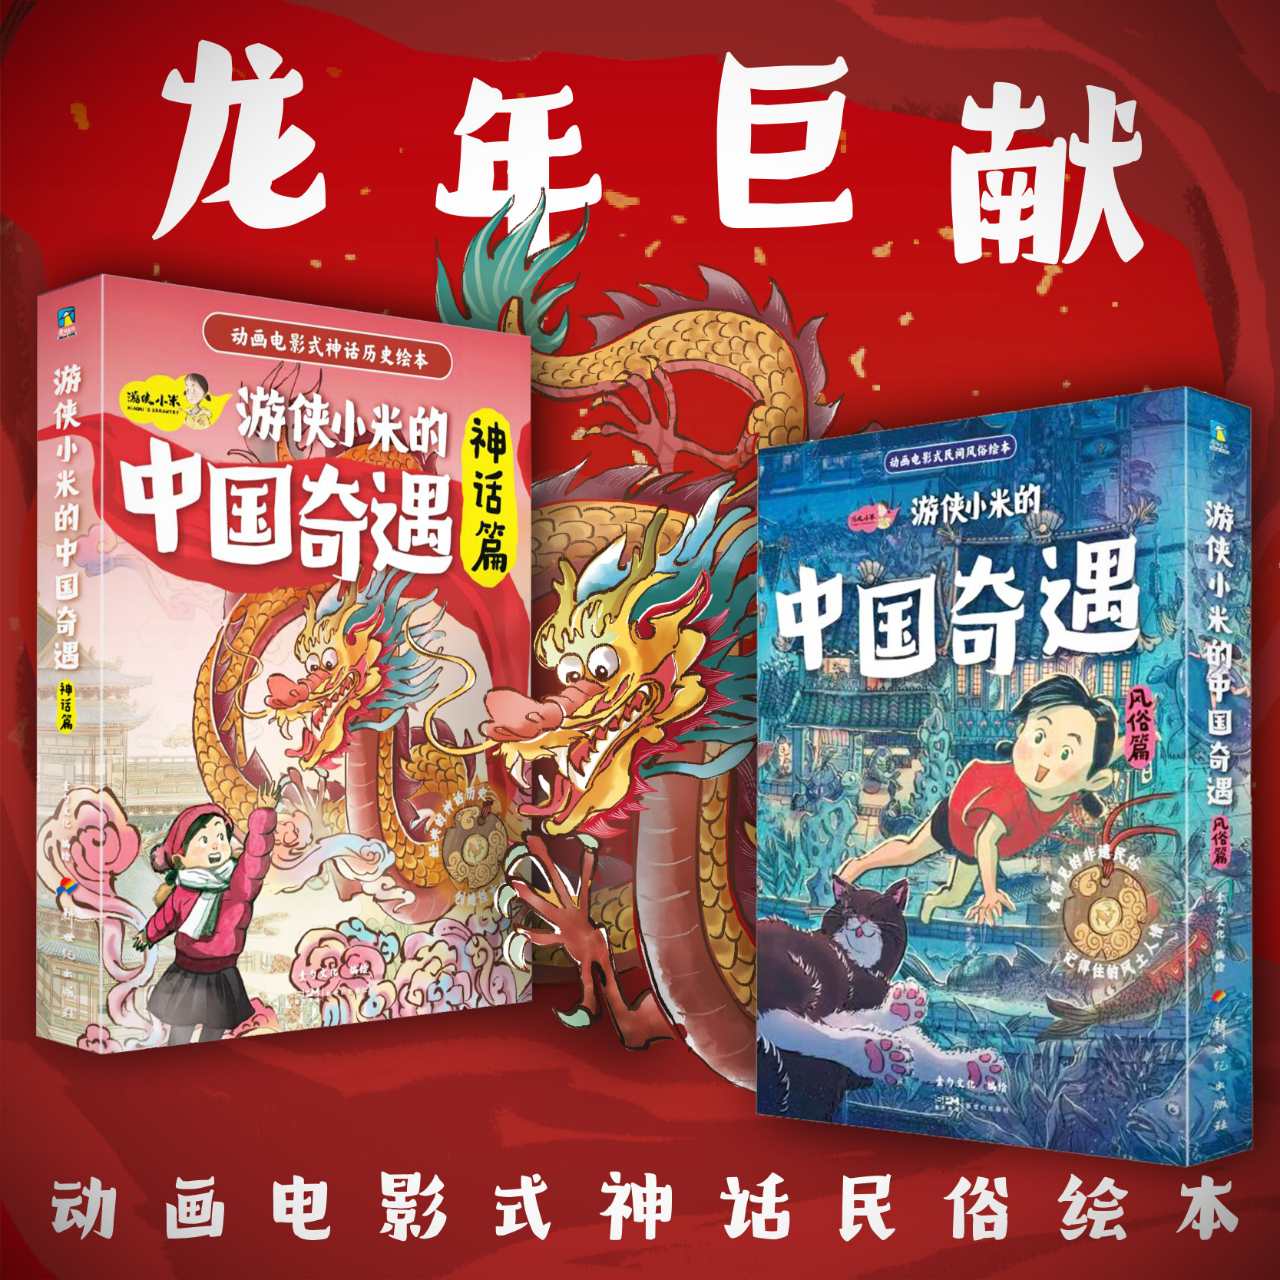 【12册】游侠小米的中国奇遇. 风俗篇/神话篇 动画电影式神话民俗绘本